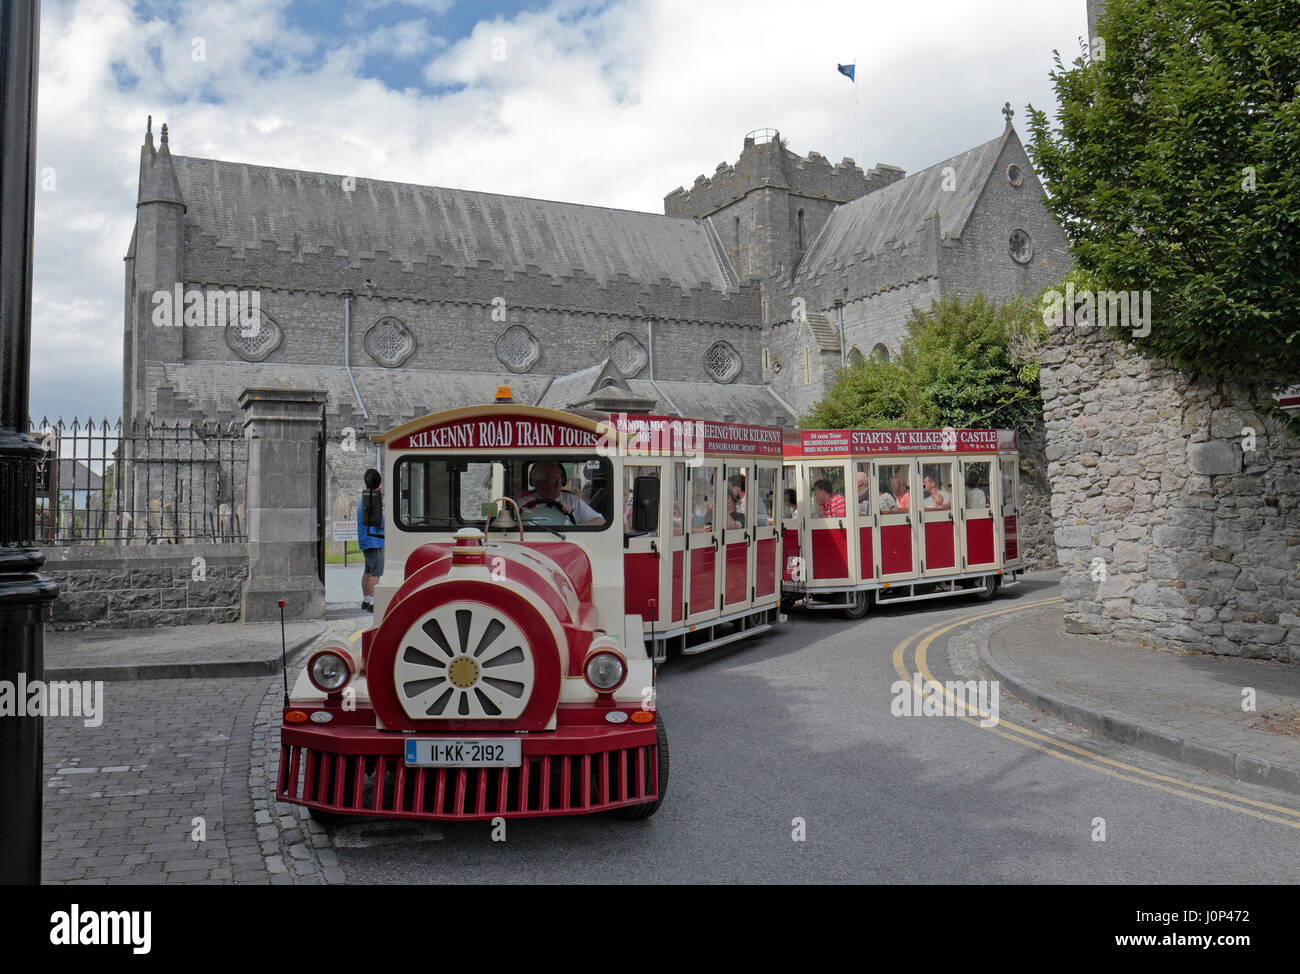 The Kilkenny Road Train Tours tourist train/bus in Kilkenny, County Kilkenny, Ireland, (Eire). Stock Photo